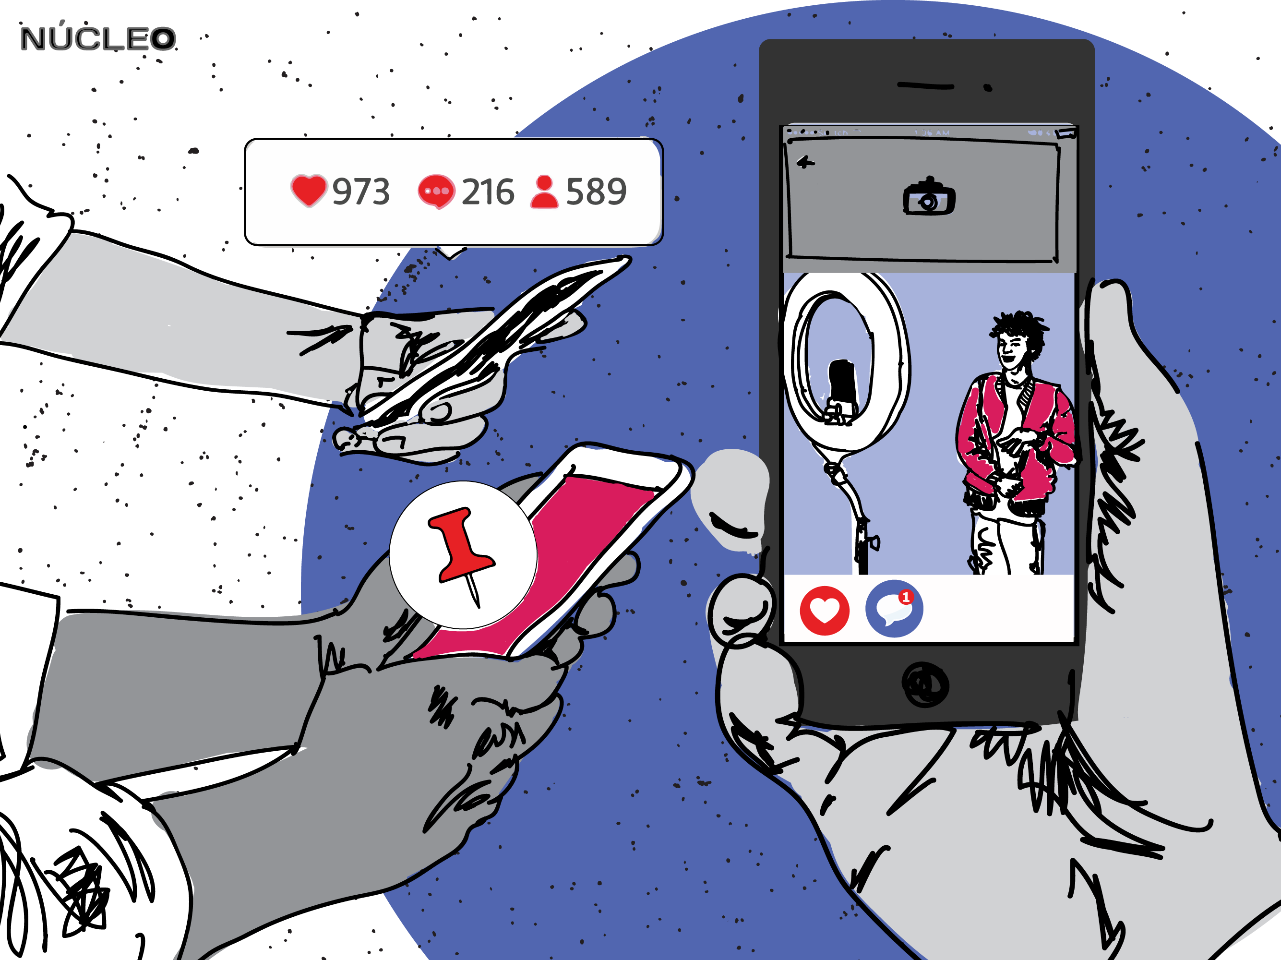 Sucesso nos EUA, Locket é uma mini rede social no iPhone